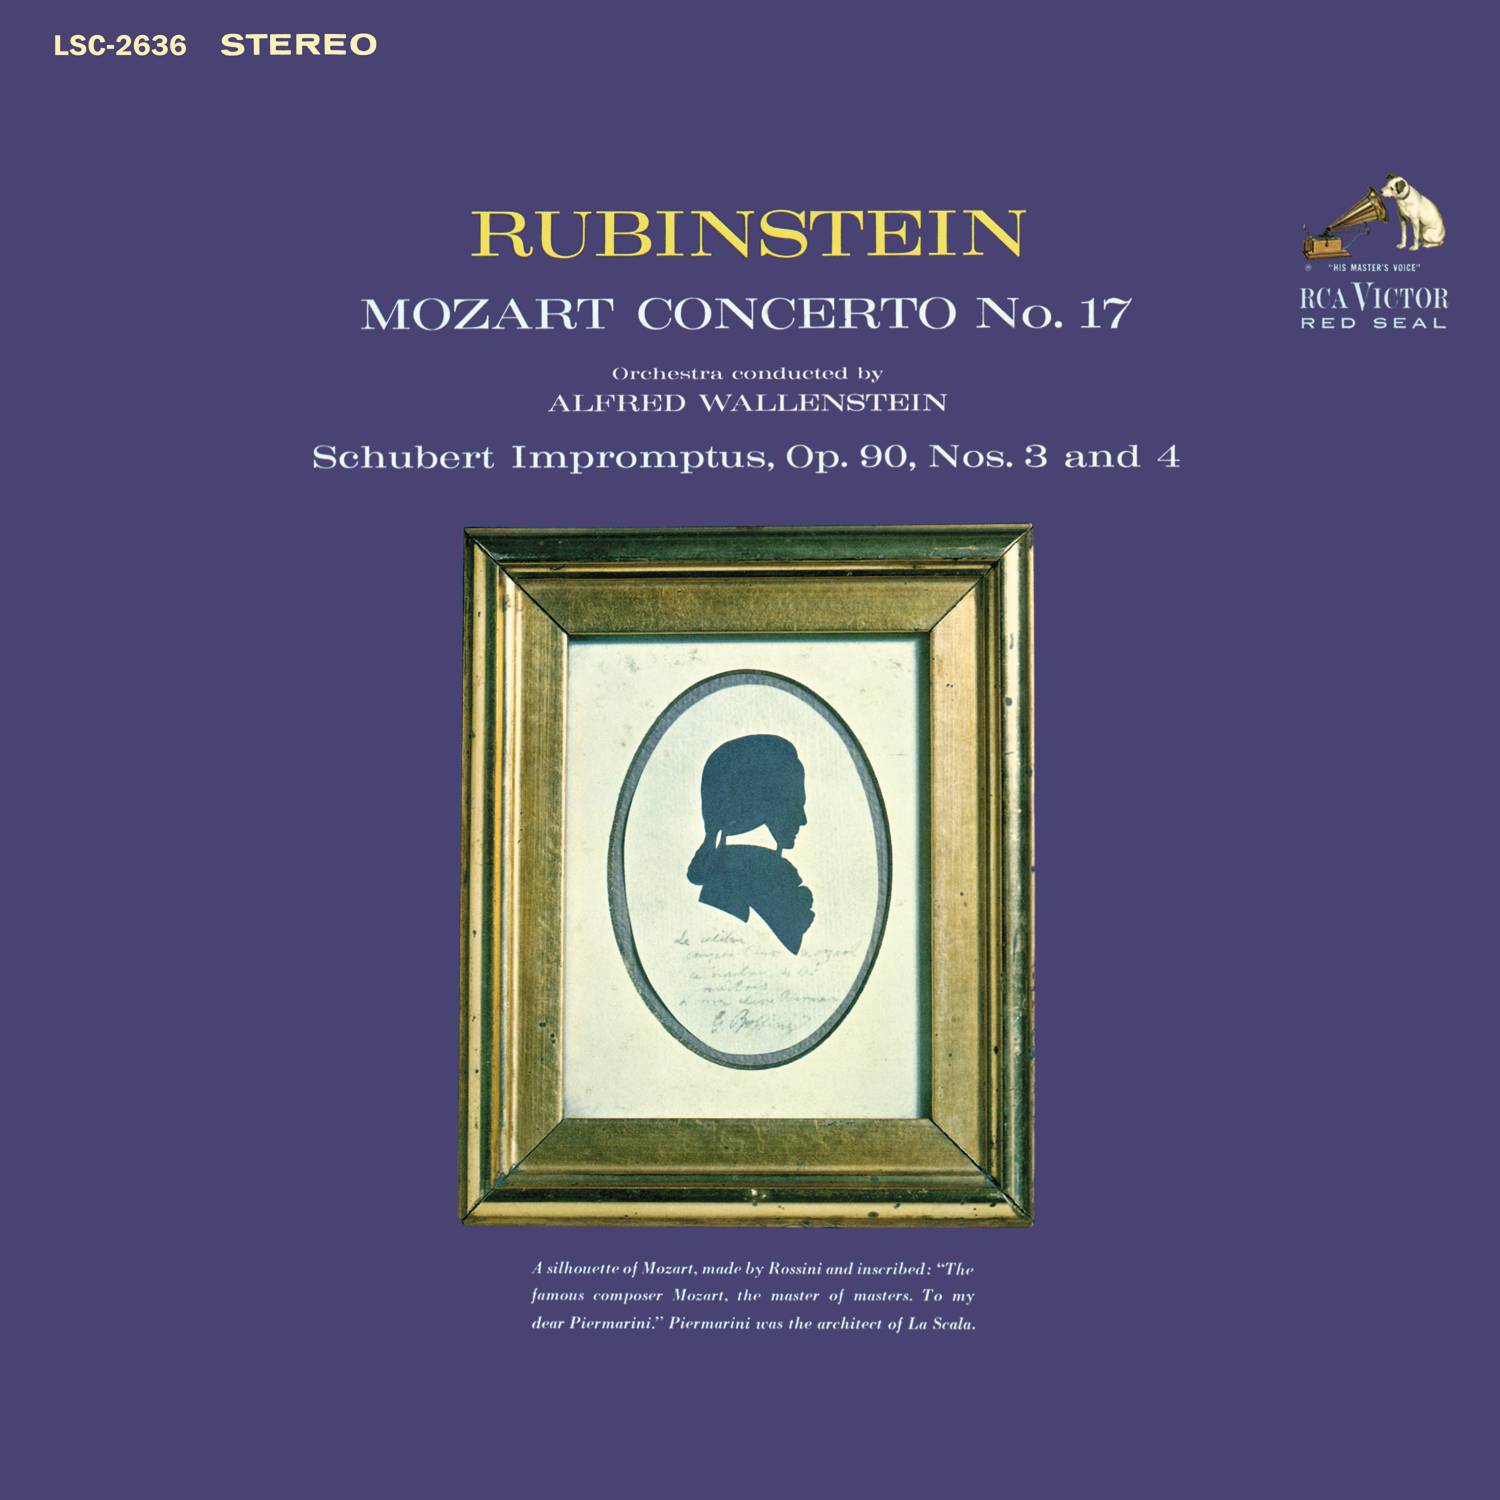 Mozart: Piano Concerto No. 17 in G Major, K. 453 - Schubert: Impromptu No. 3 in G-Flat Major & Impromptu No. 4 in A-Flat Major, D. 899